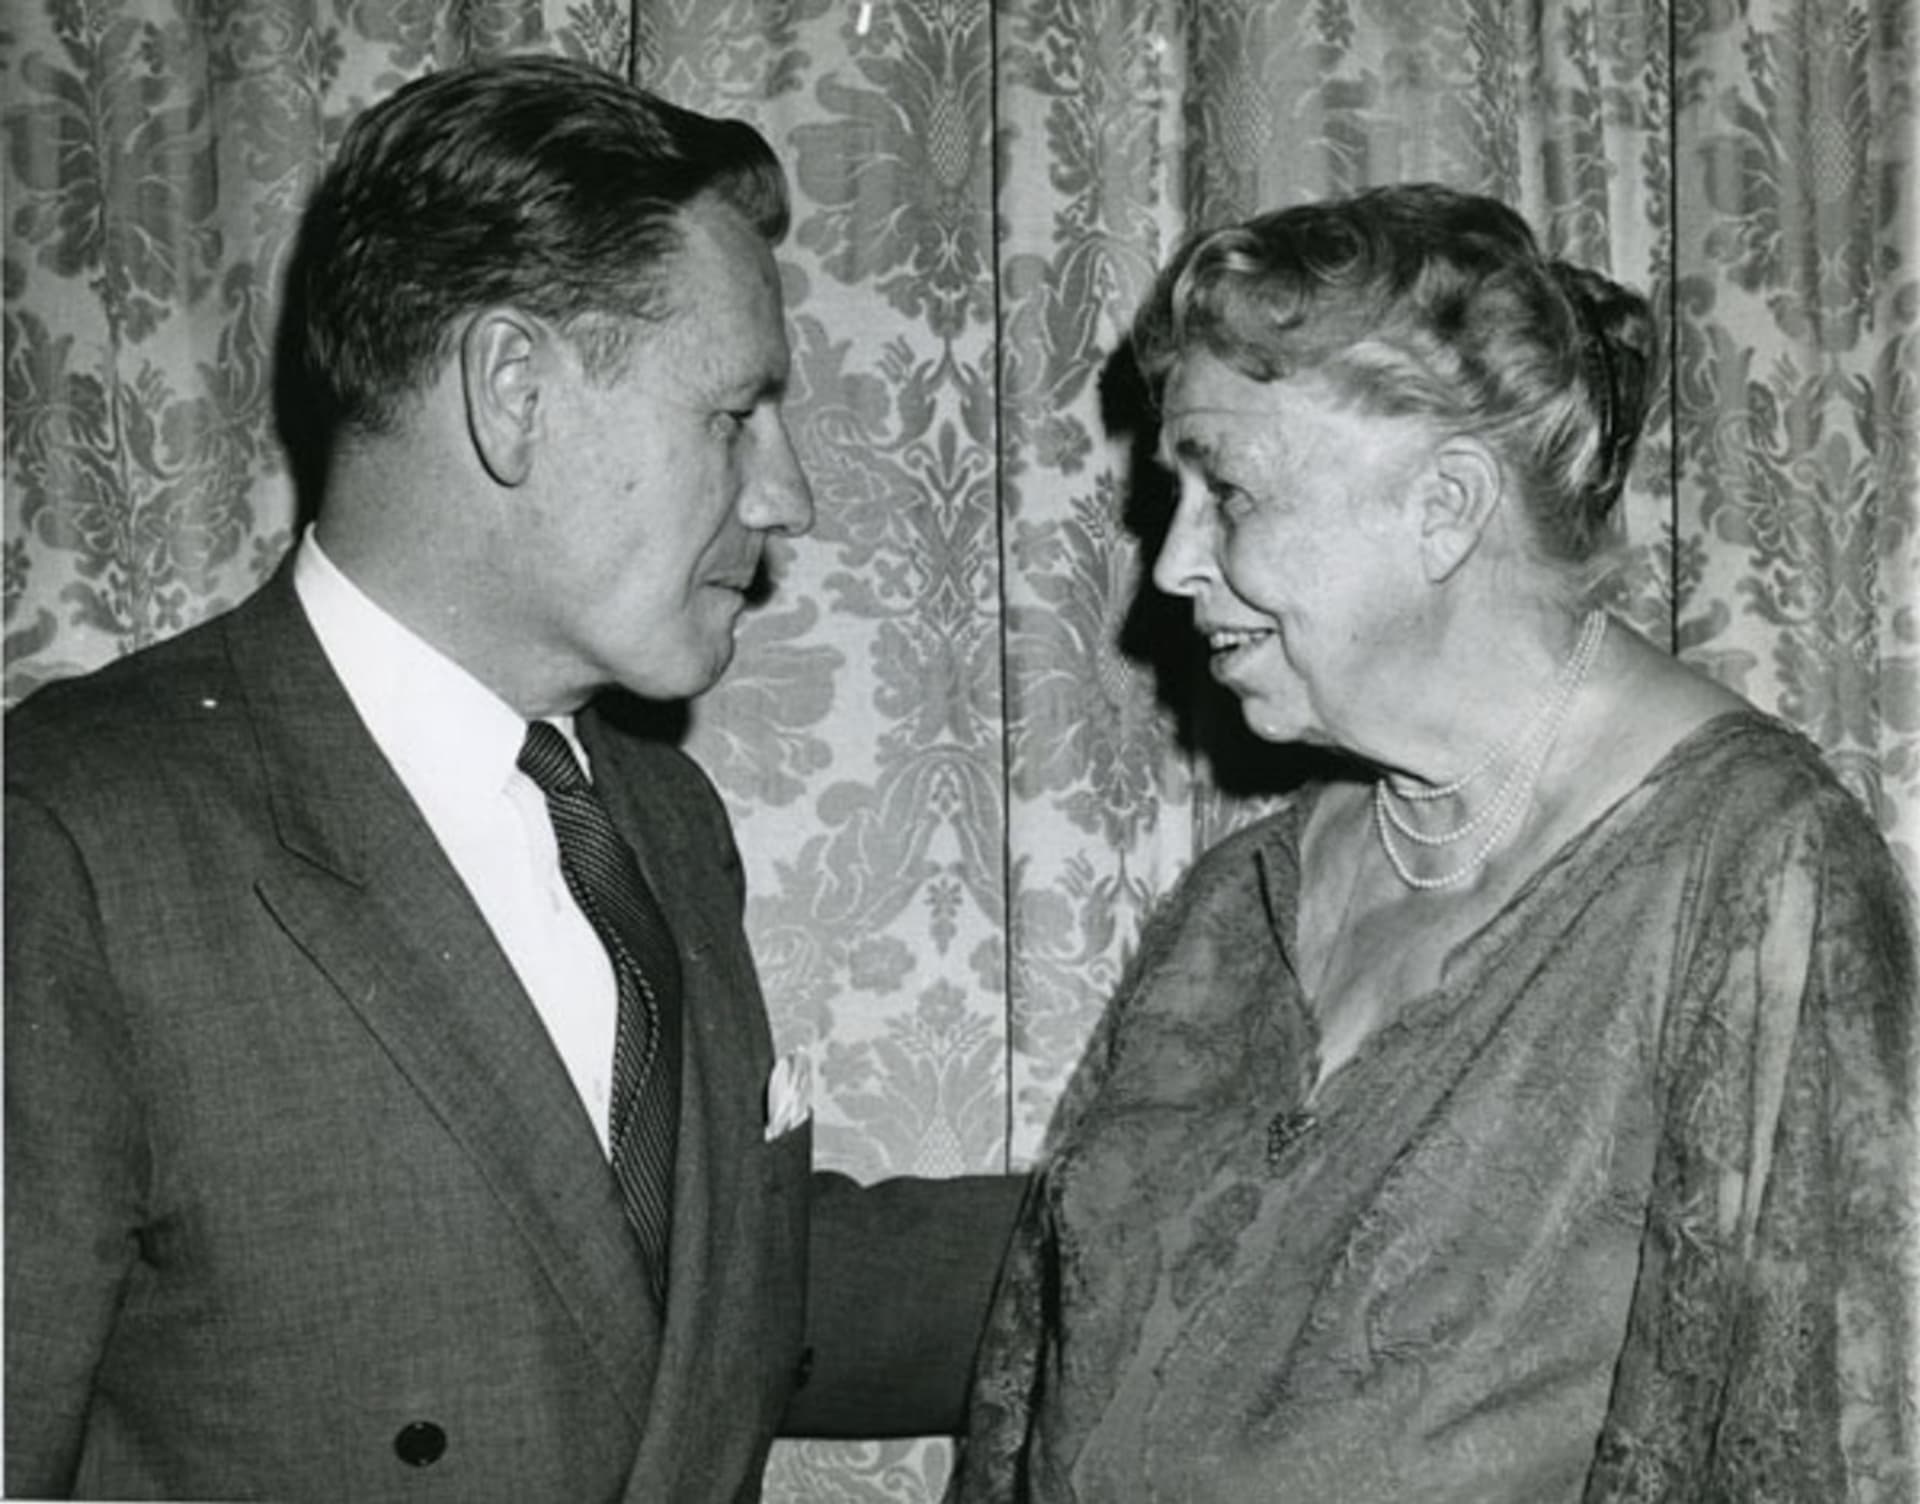 Eleanor si dopisy s milenkou vyměňovala až do své smrti v roce 1962.